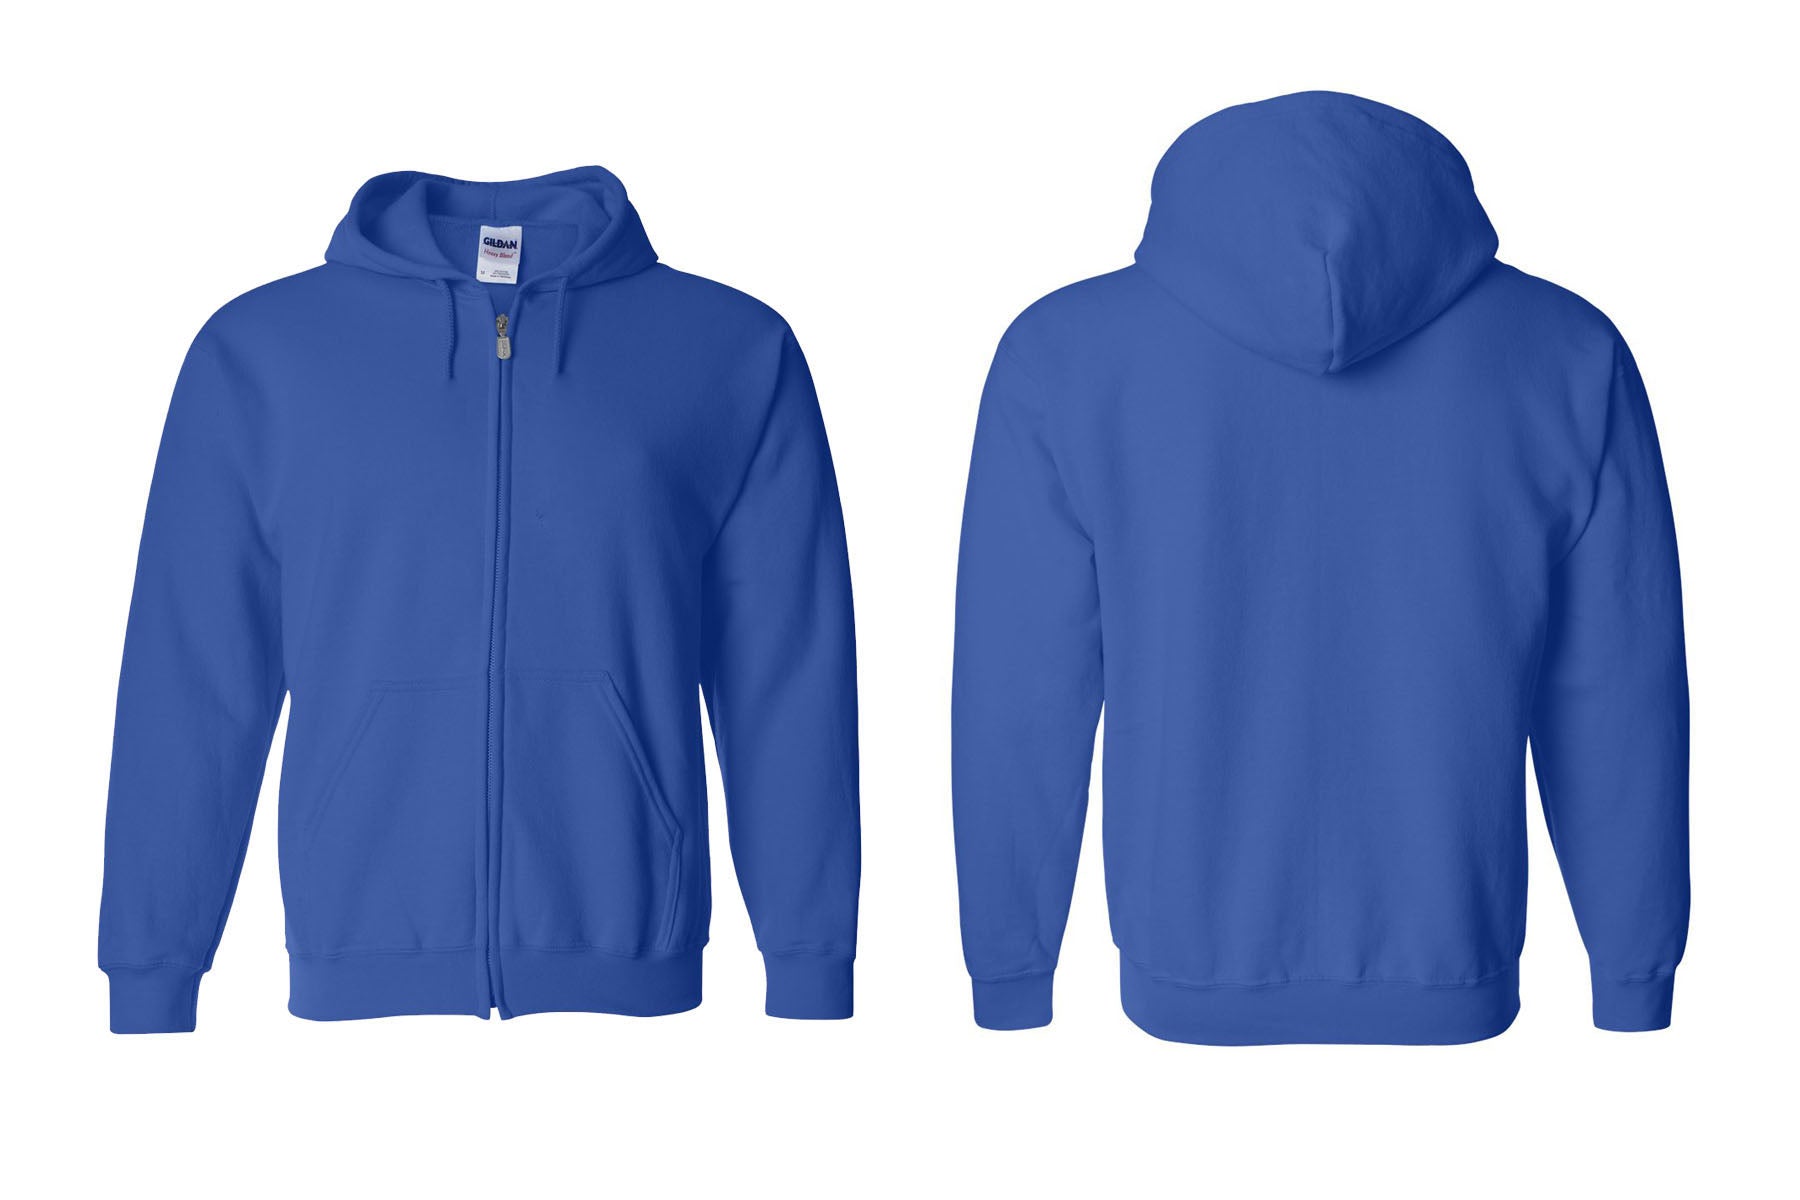 Sandyston Walpack design 1 Zip up Sweatshirt